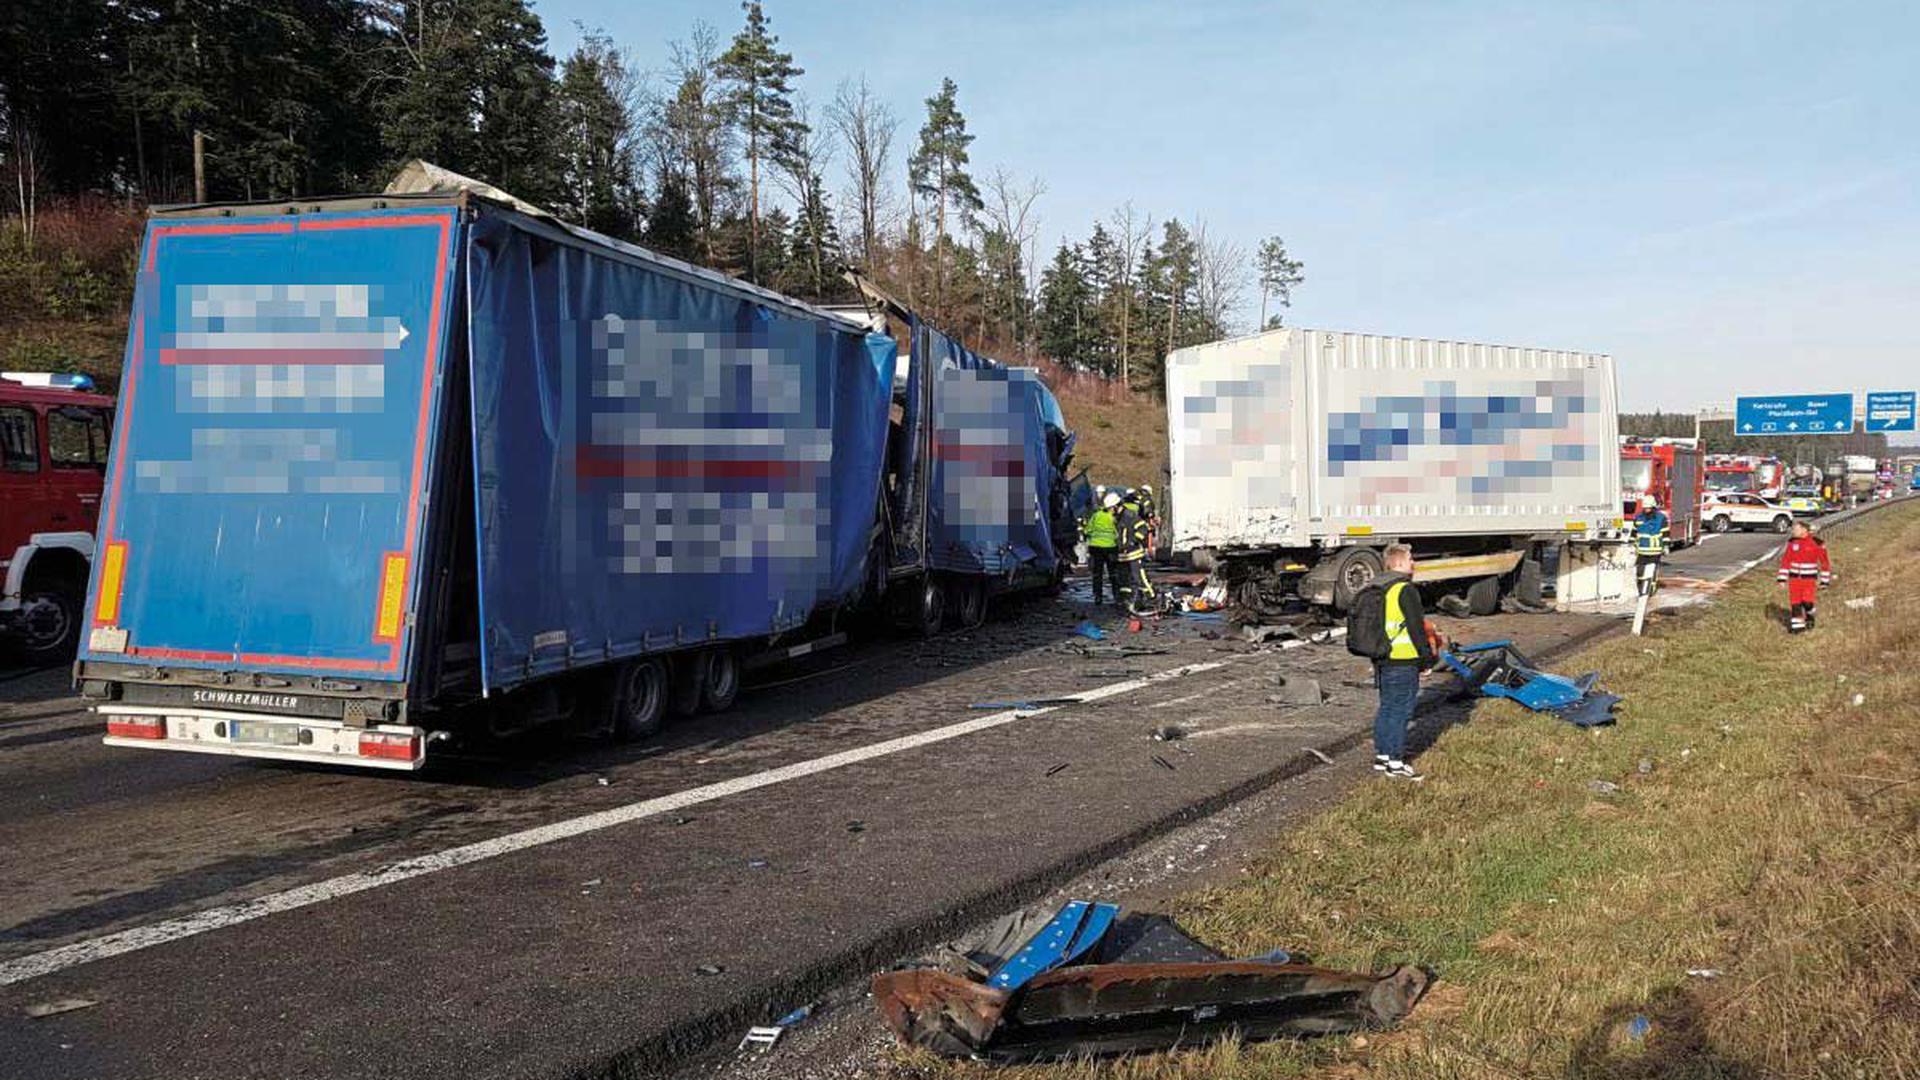 Nach dem tödlichen Unfall auf der A8 bei Pforzheim sollen Gaffer die Tür eines Rettungswagens geöffnet haben, um den Verletzten sehen zu können.